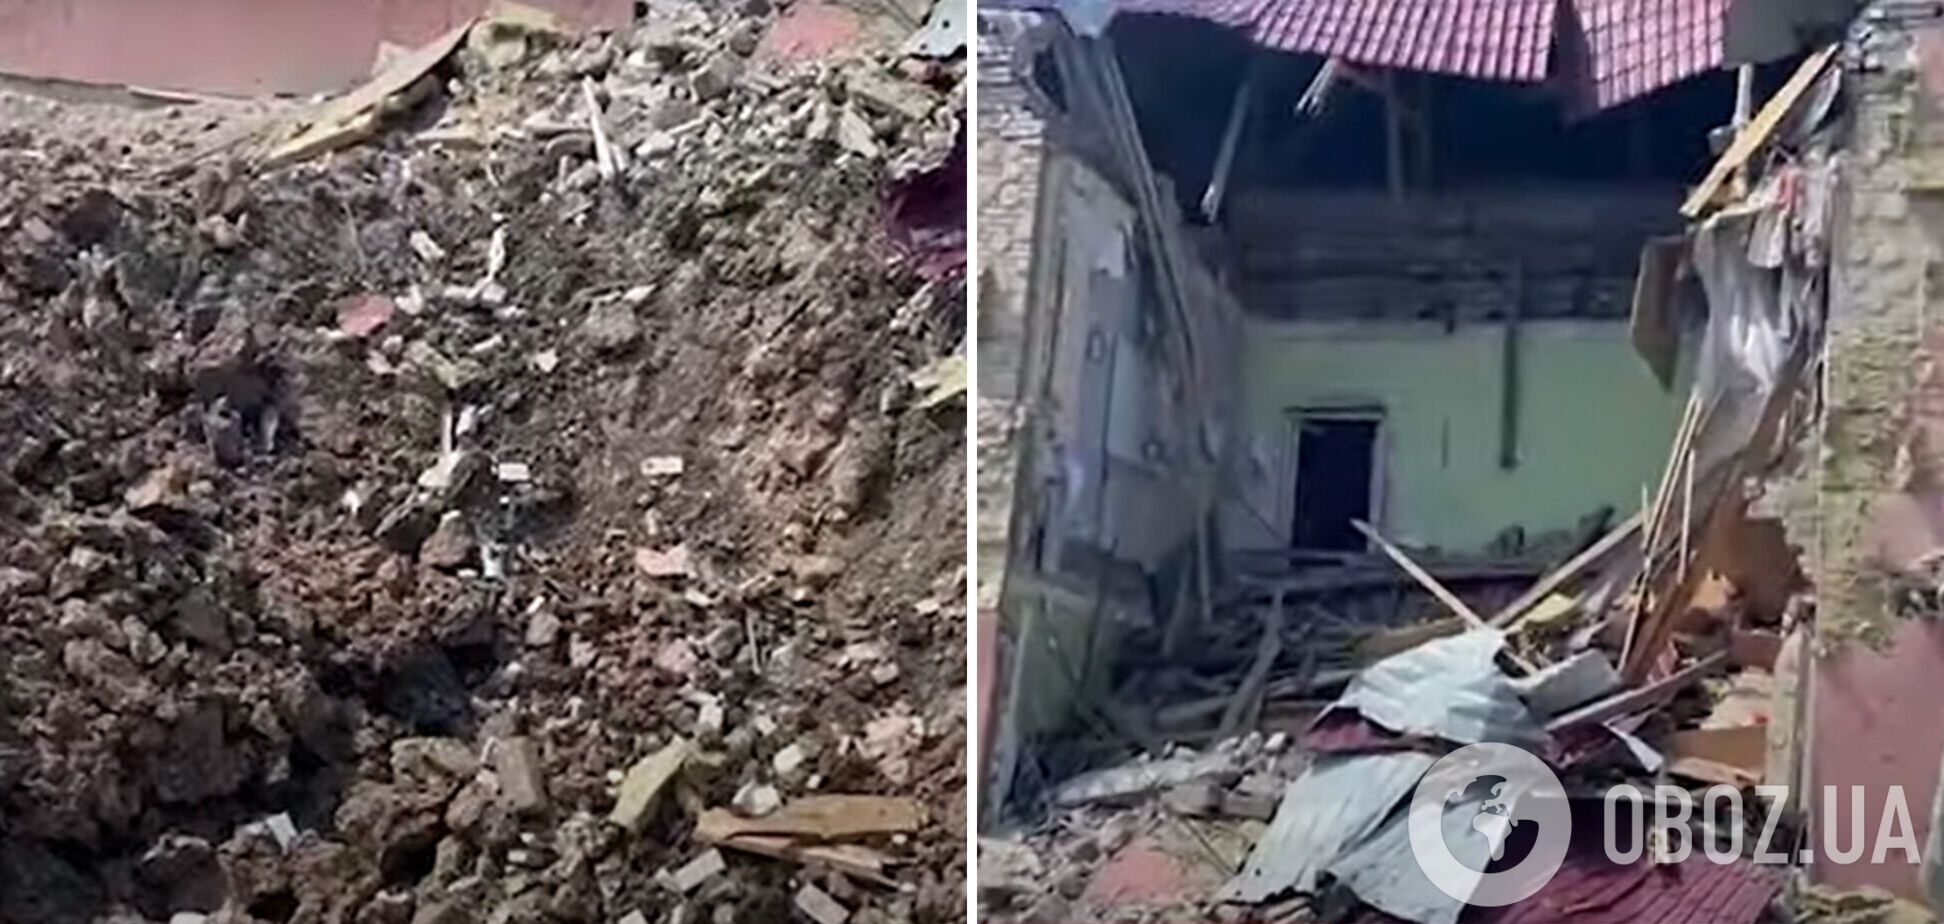 Российские оккупанты сбросили авиабомбу на школу вблизи Северодонецка. Видео